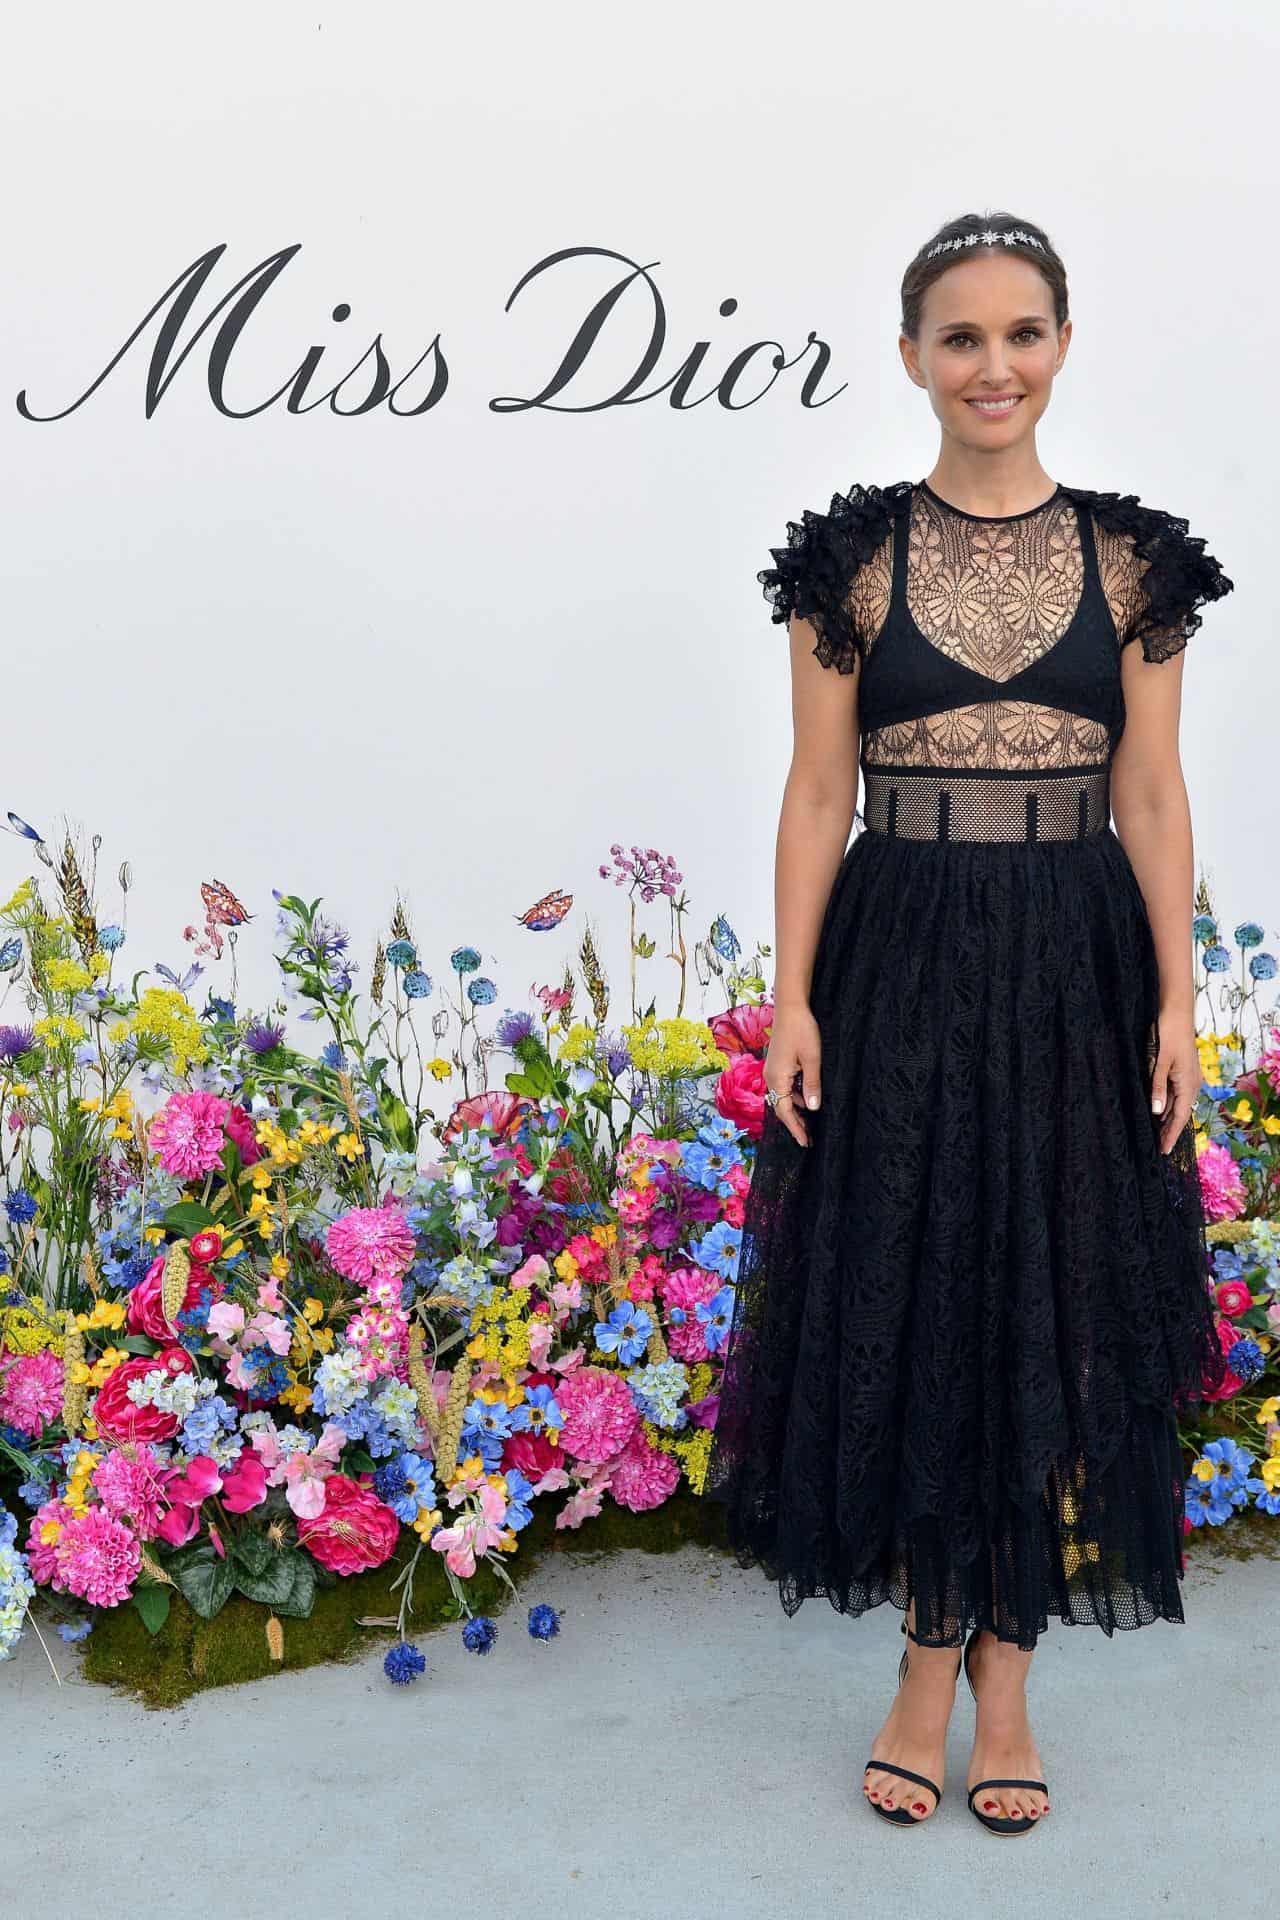 Natalie Portman Shines in Black at the Miss Dior Millefiori Garden Pop-Up